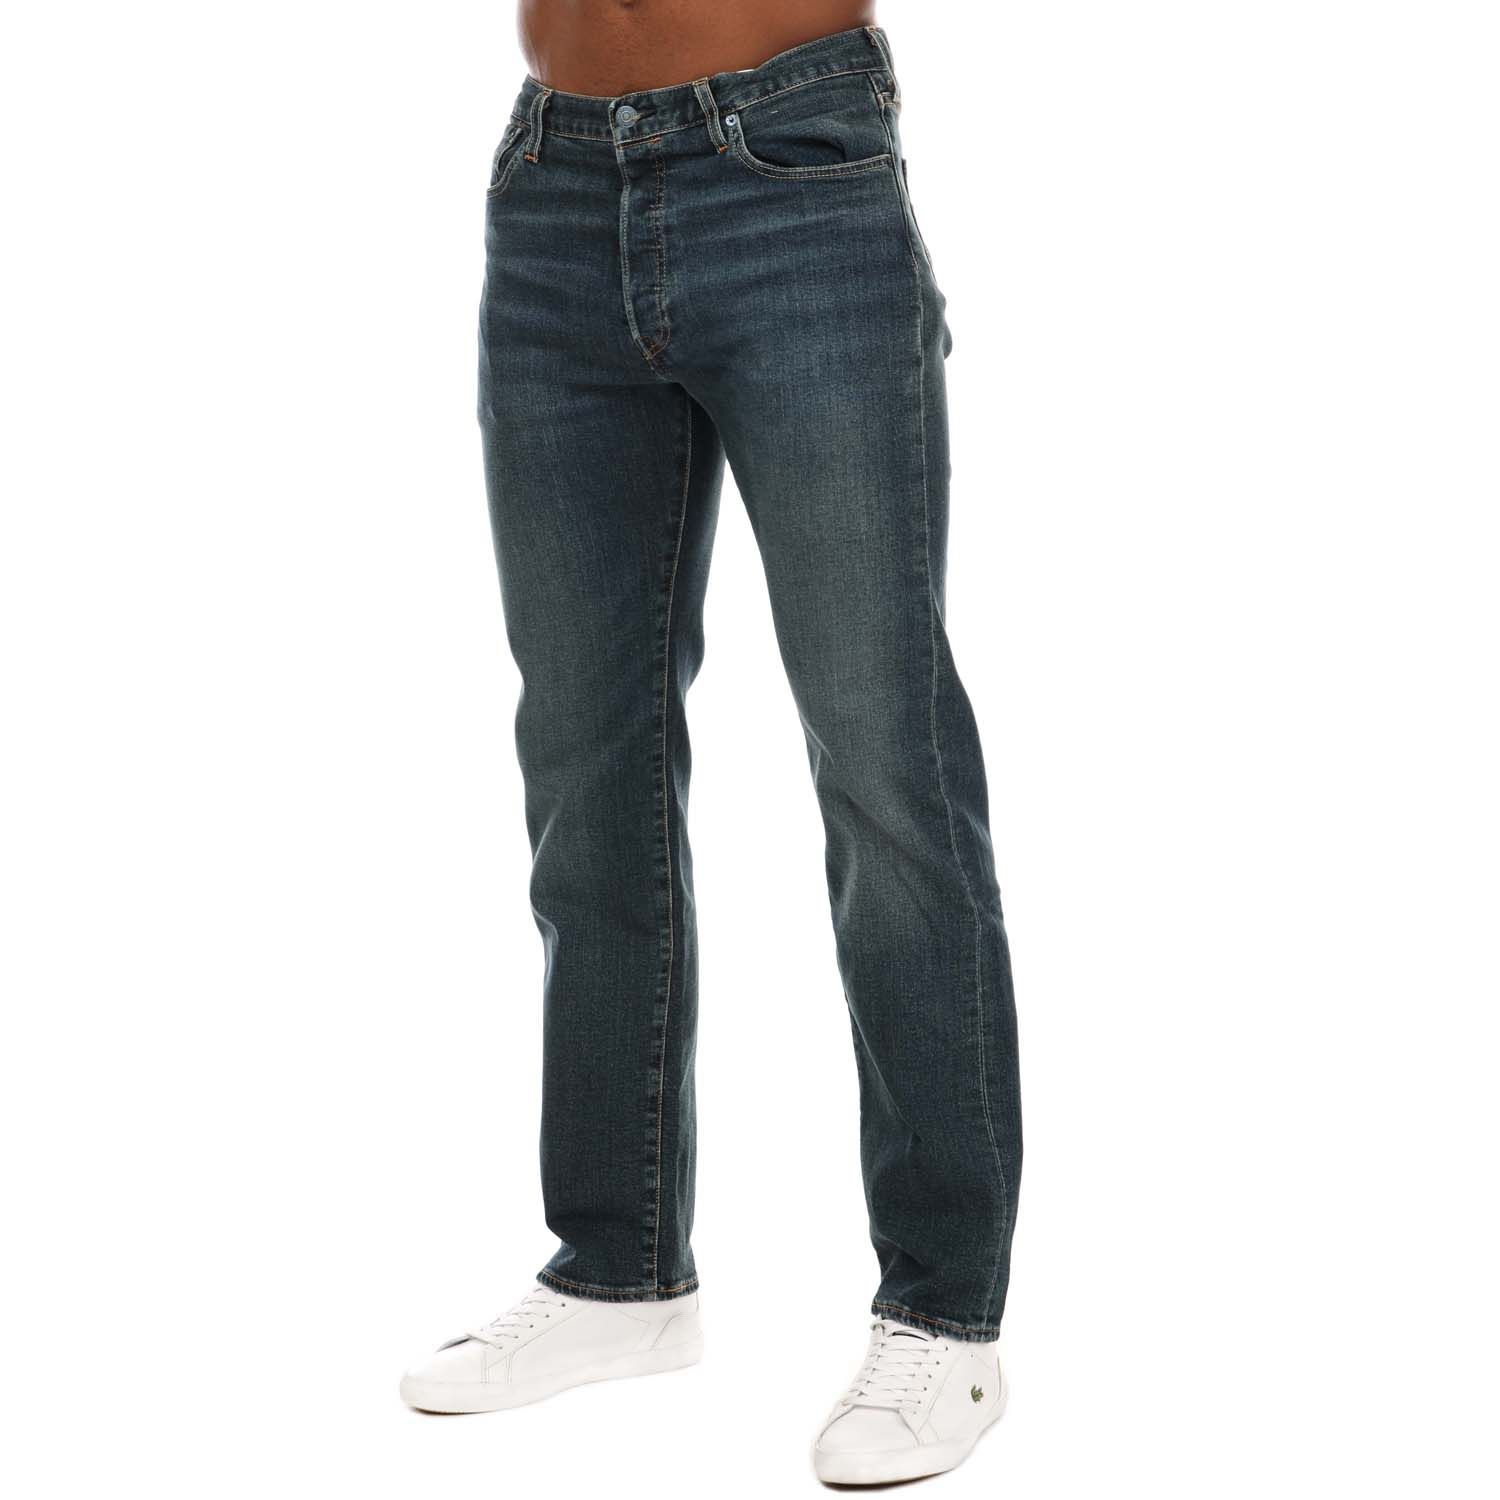 Levi's Men's 501 Original Shrink To Fit Jeans Straight Leg Button